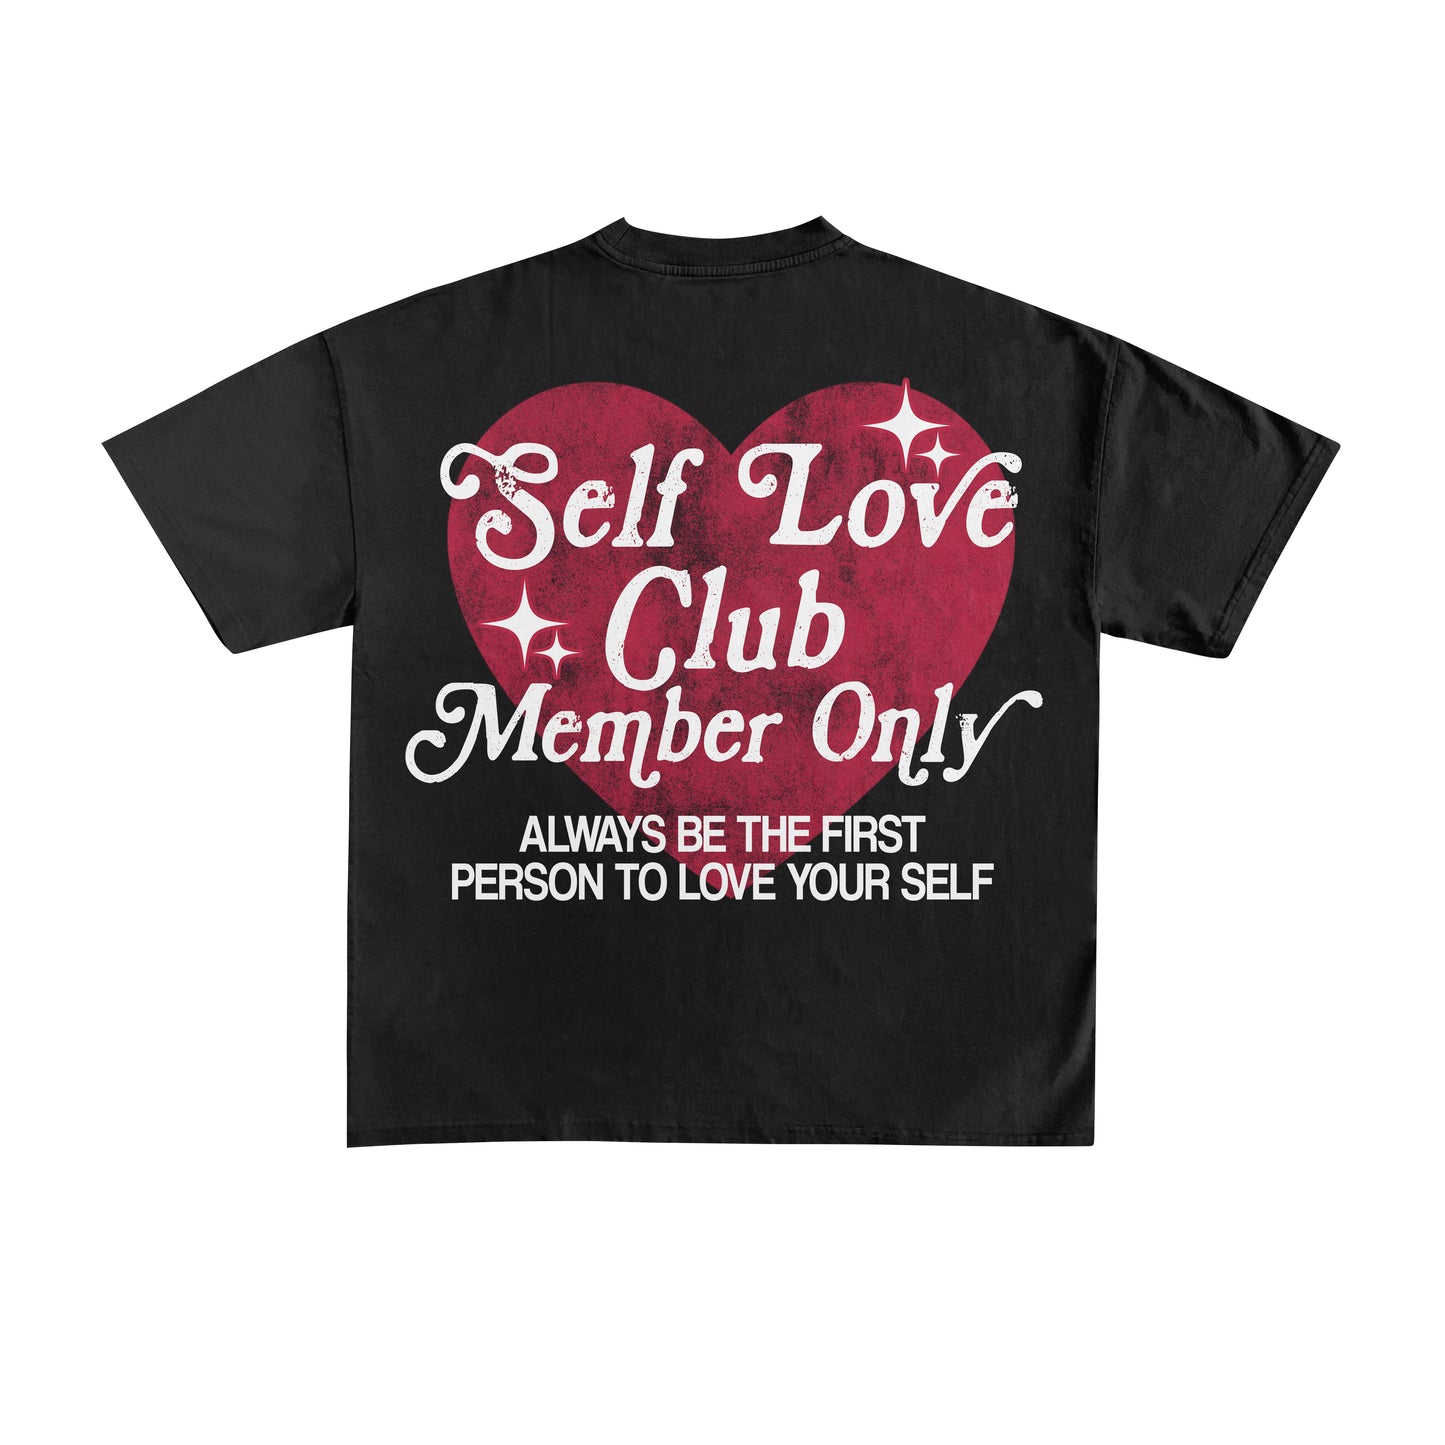 SELF LOVE CLUB MEMBERS ONLY